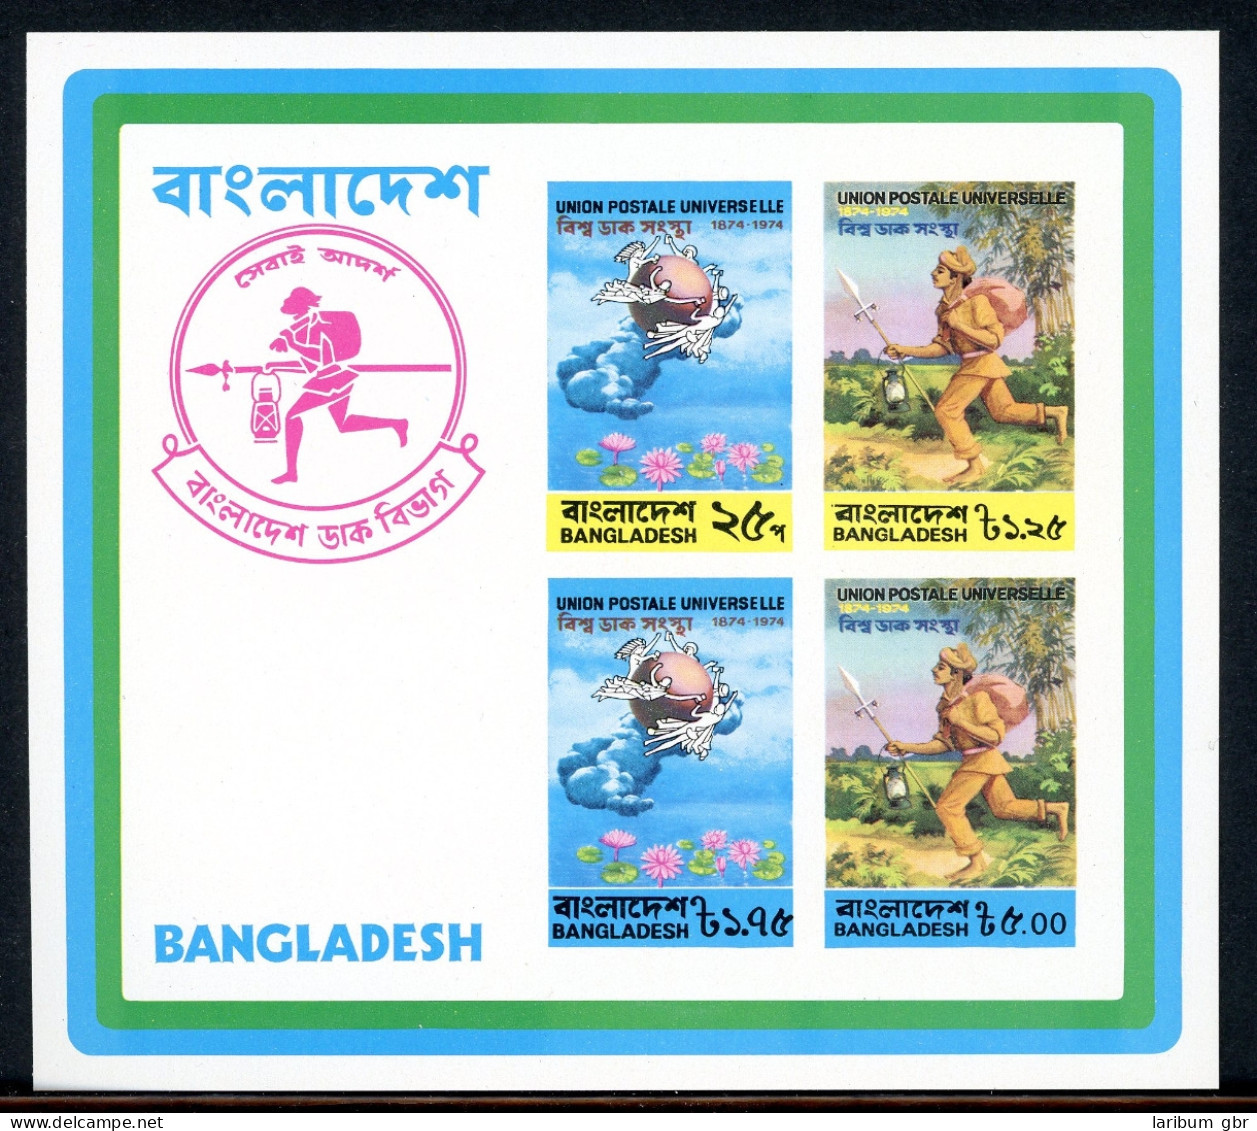 Bangladesch Block 1 Postfrisch UPU #HO546 - Bangladesch